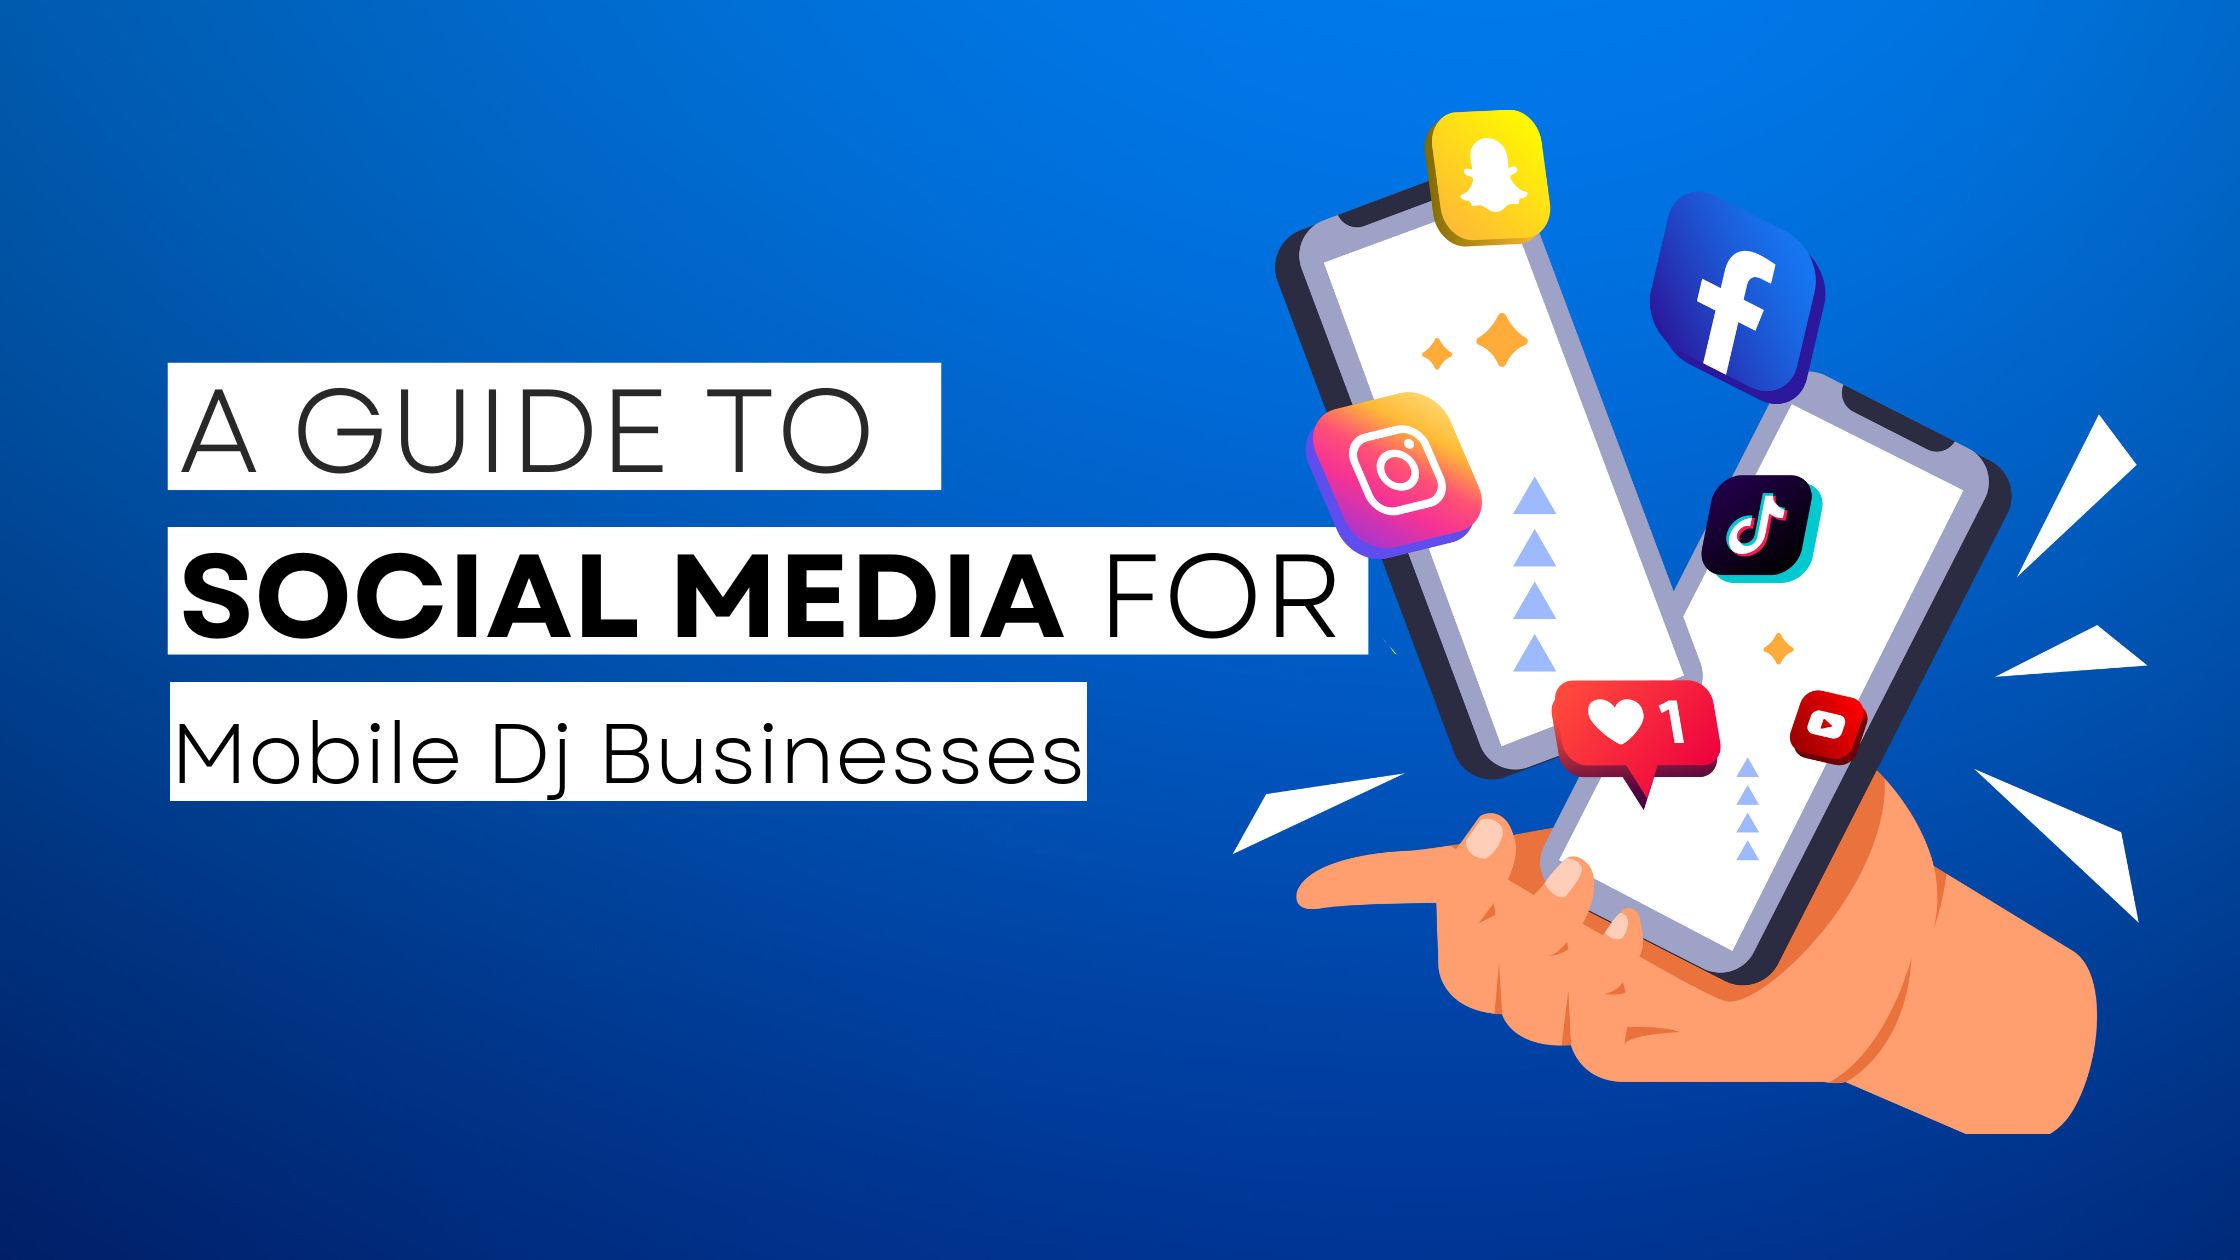 How to start Mobile Dj on social media